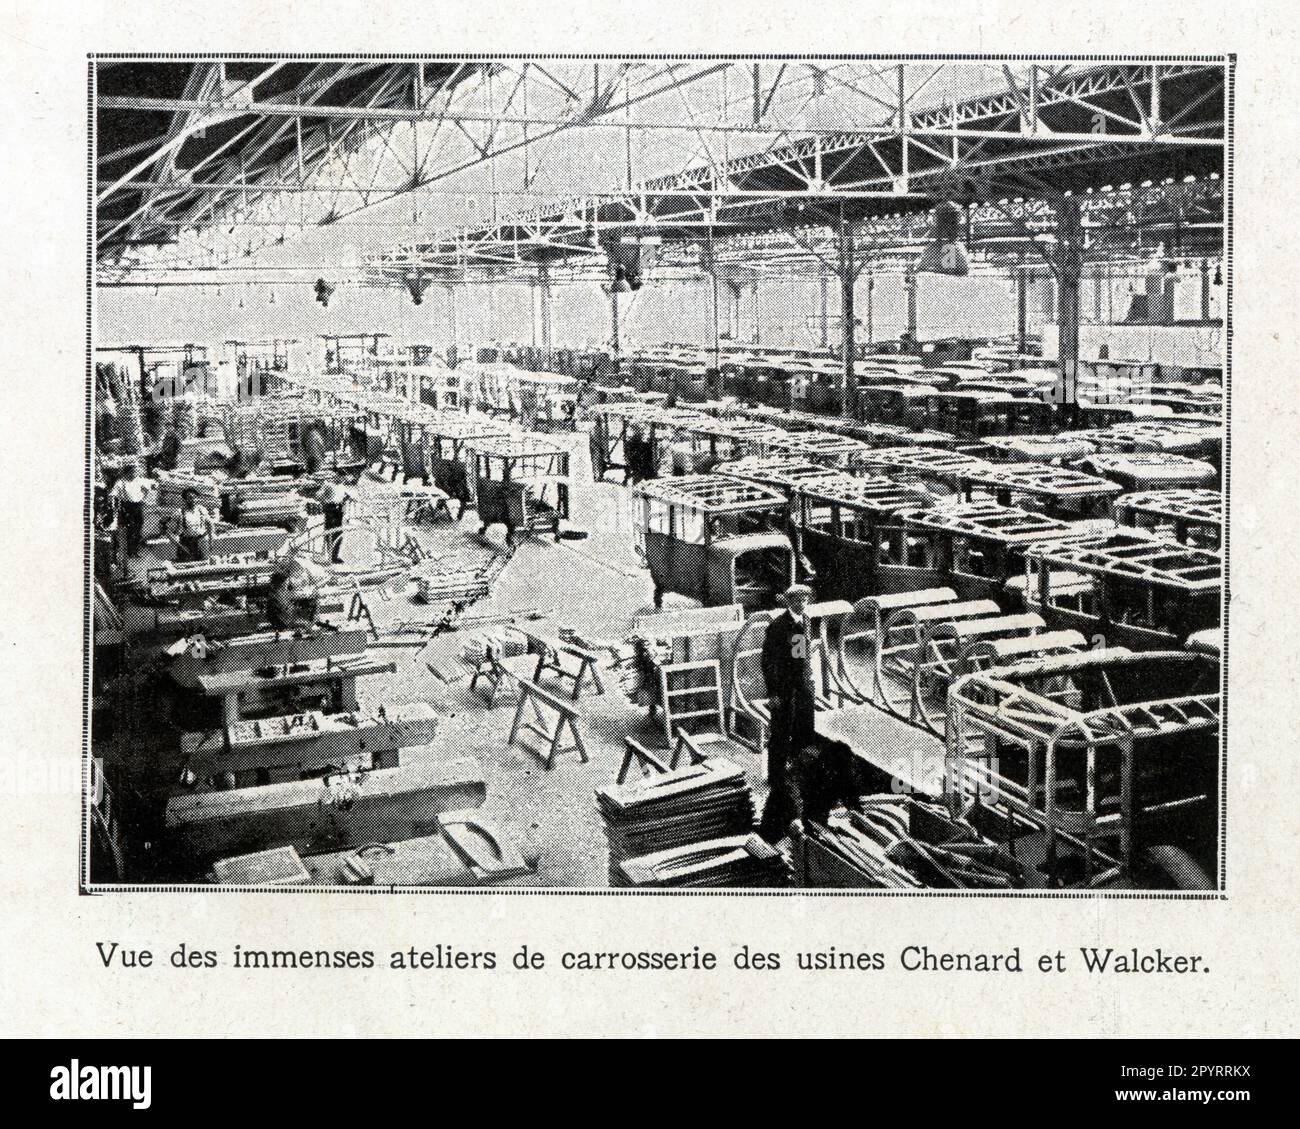 Vue des immenses ateliers de carrosserie des usines Chenard et Walcker, 1929 Foto Stock